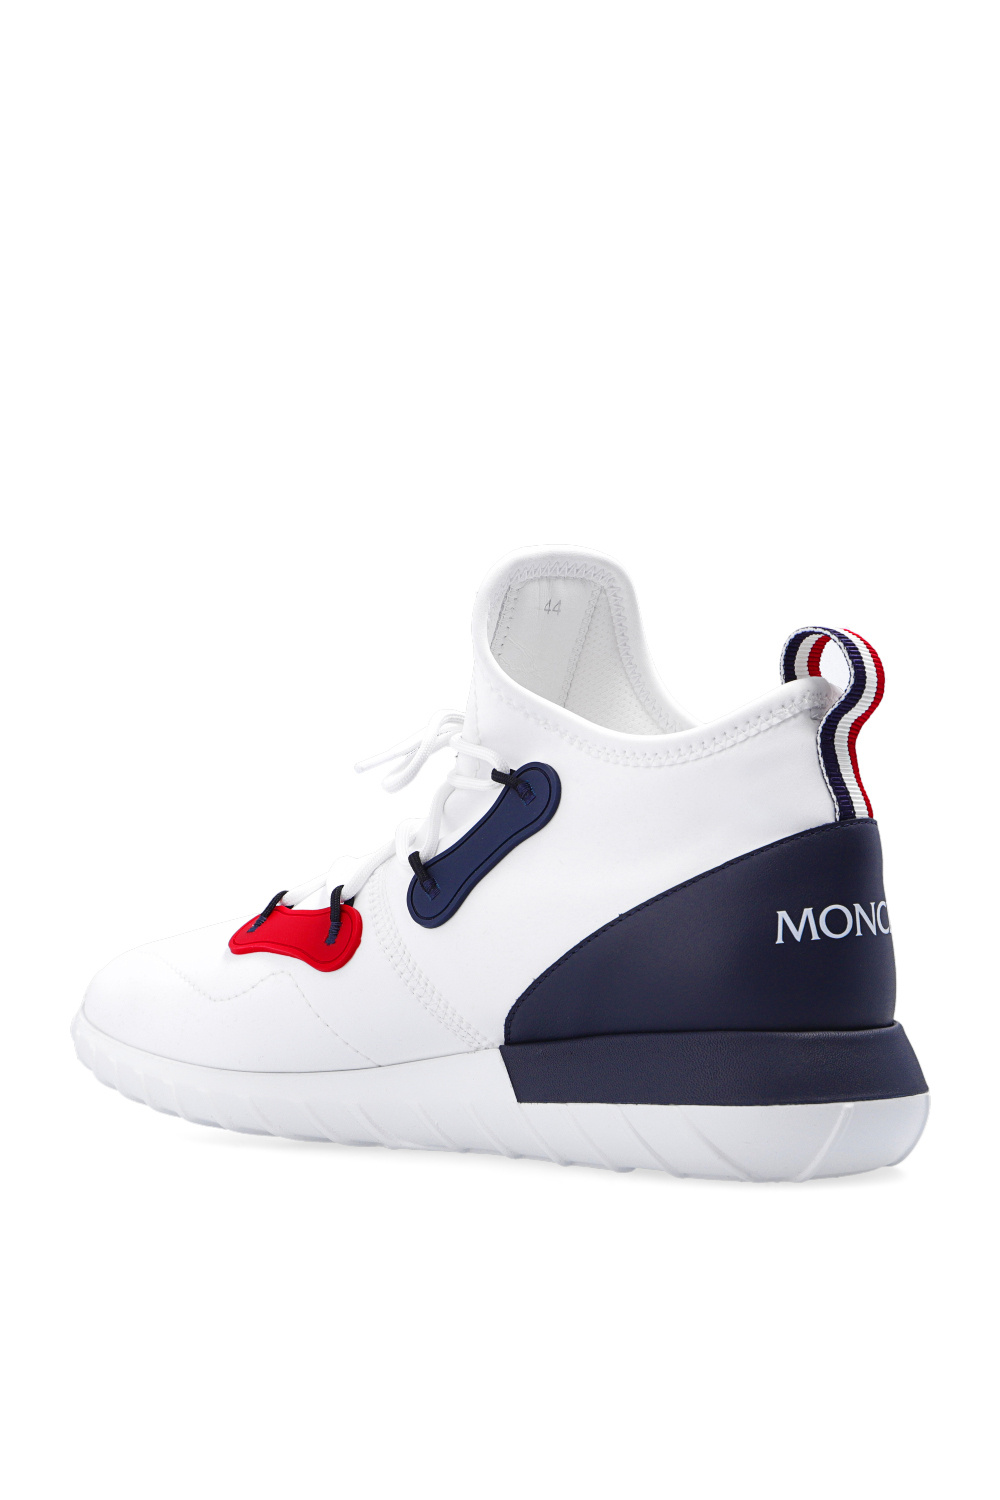 Moncler ‘Emilien II’ sneakers